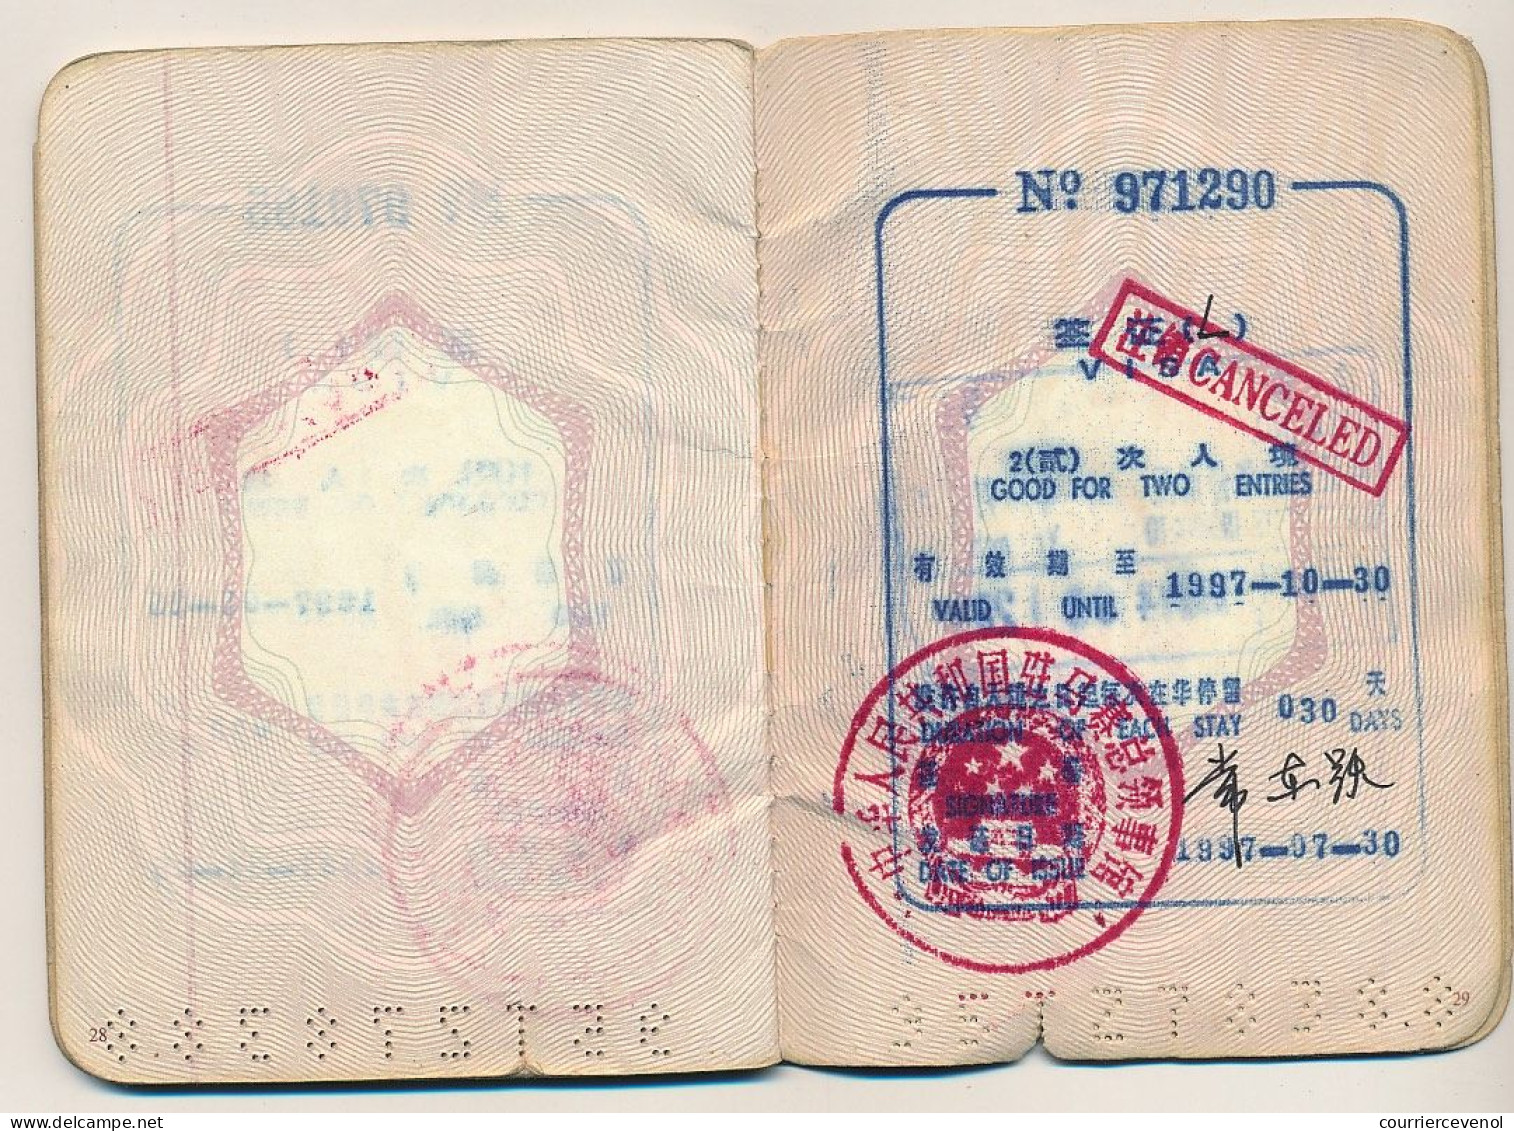 FRANCE - Passeport Voyageur Marseillais entièrement rempli de visas chinois + Hong-Kong, Bangkok... fiscaux 150F/200F